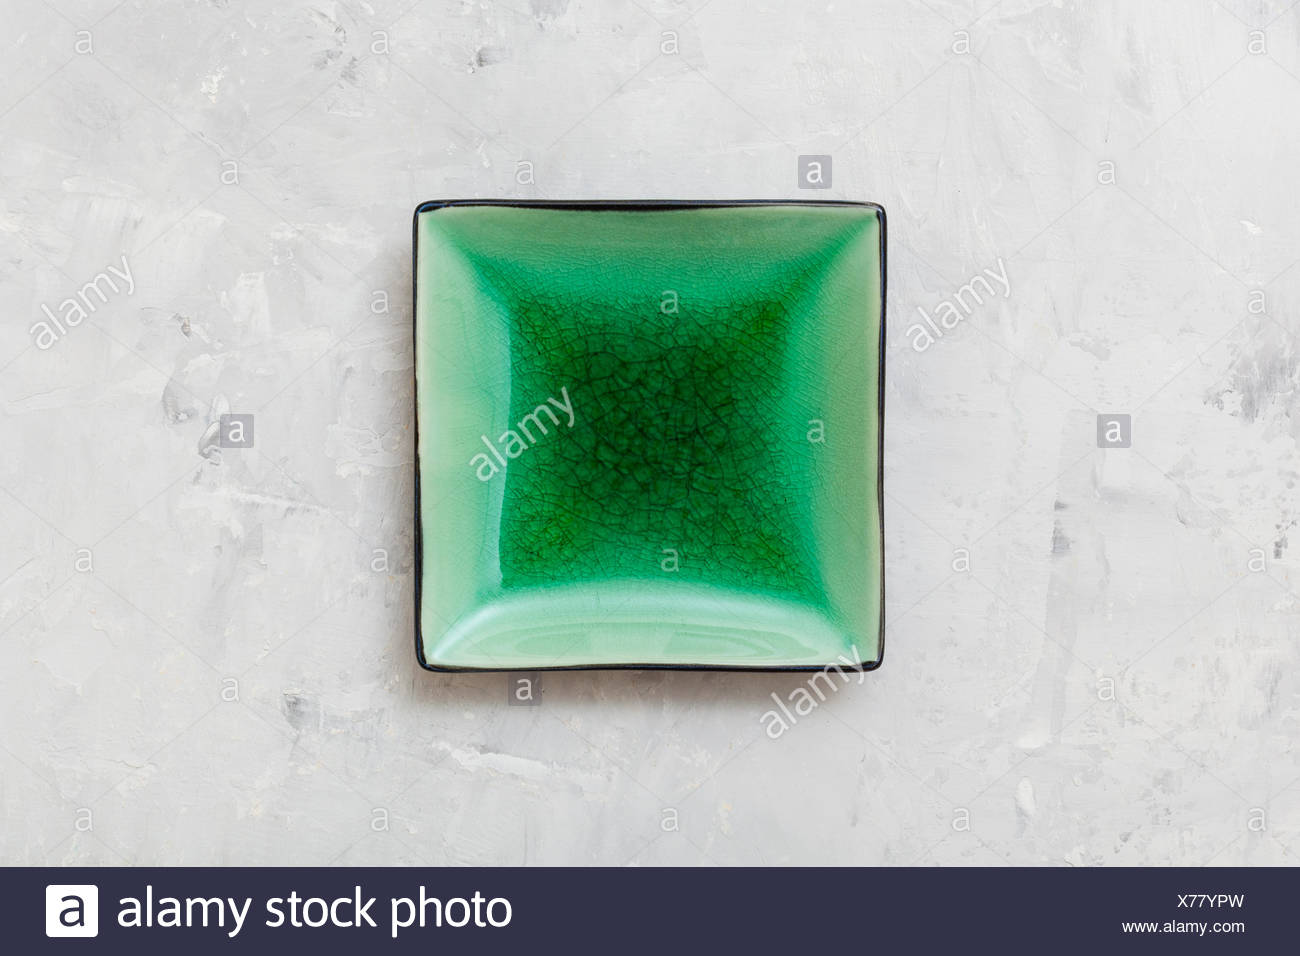 Concrete Green Square Plate